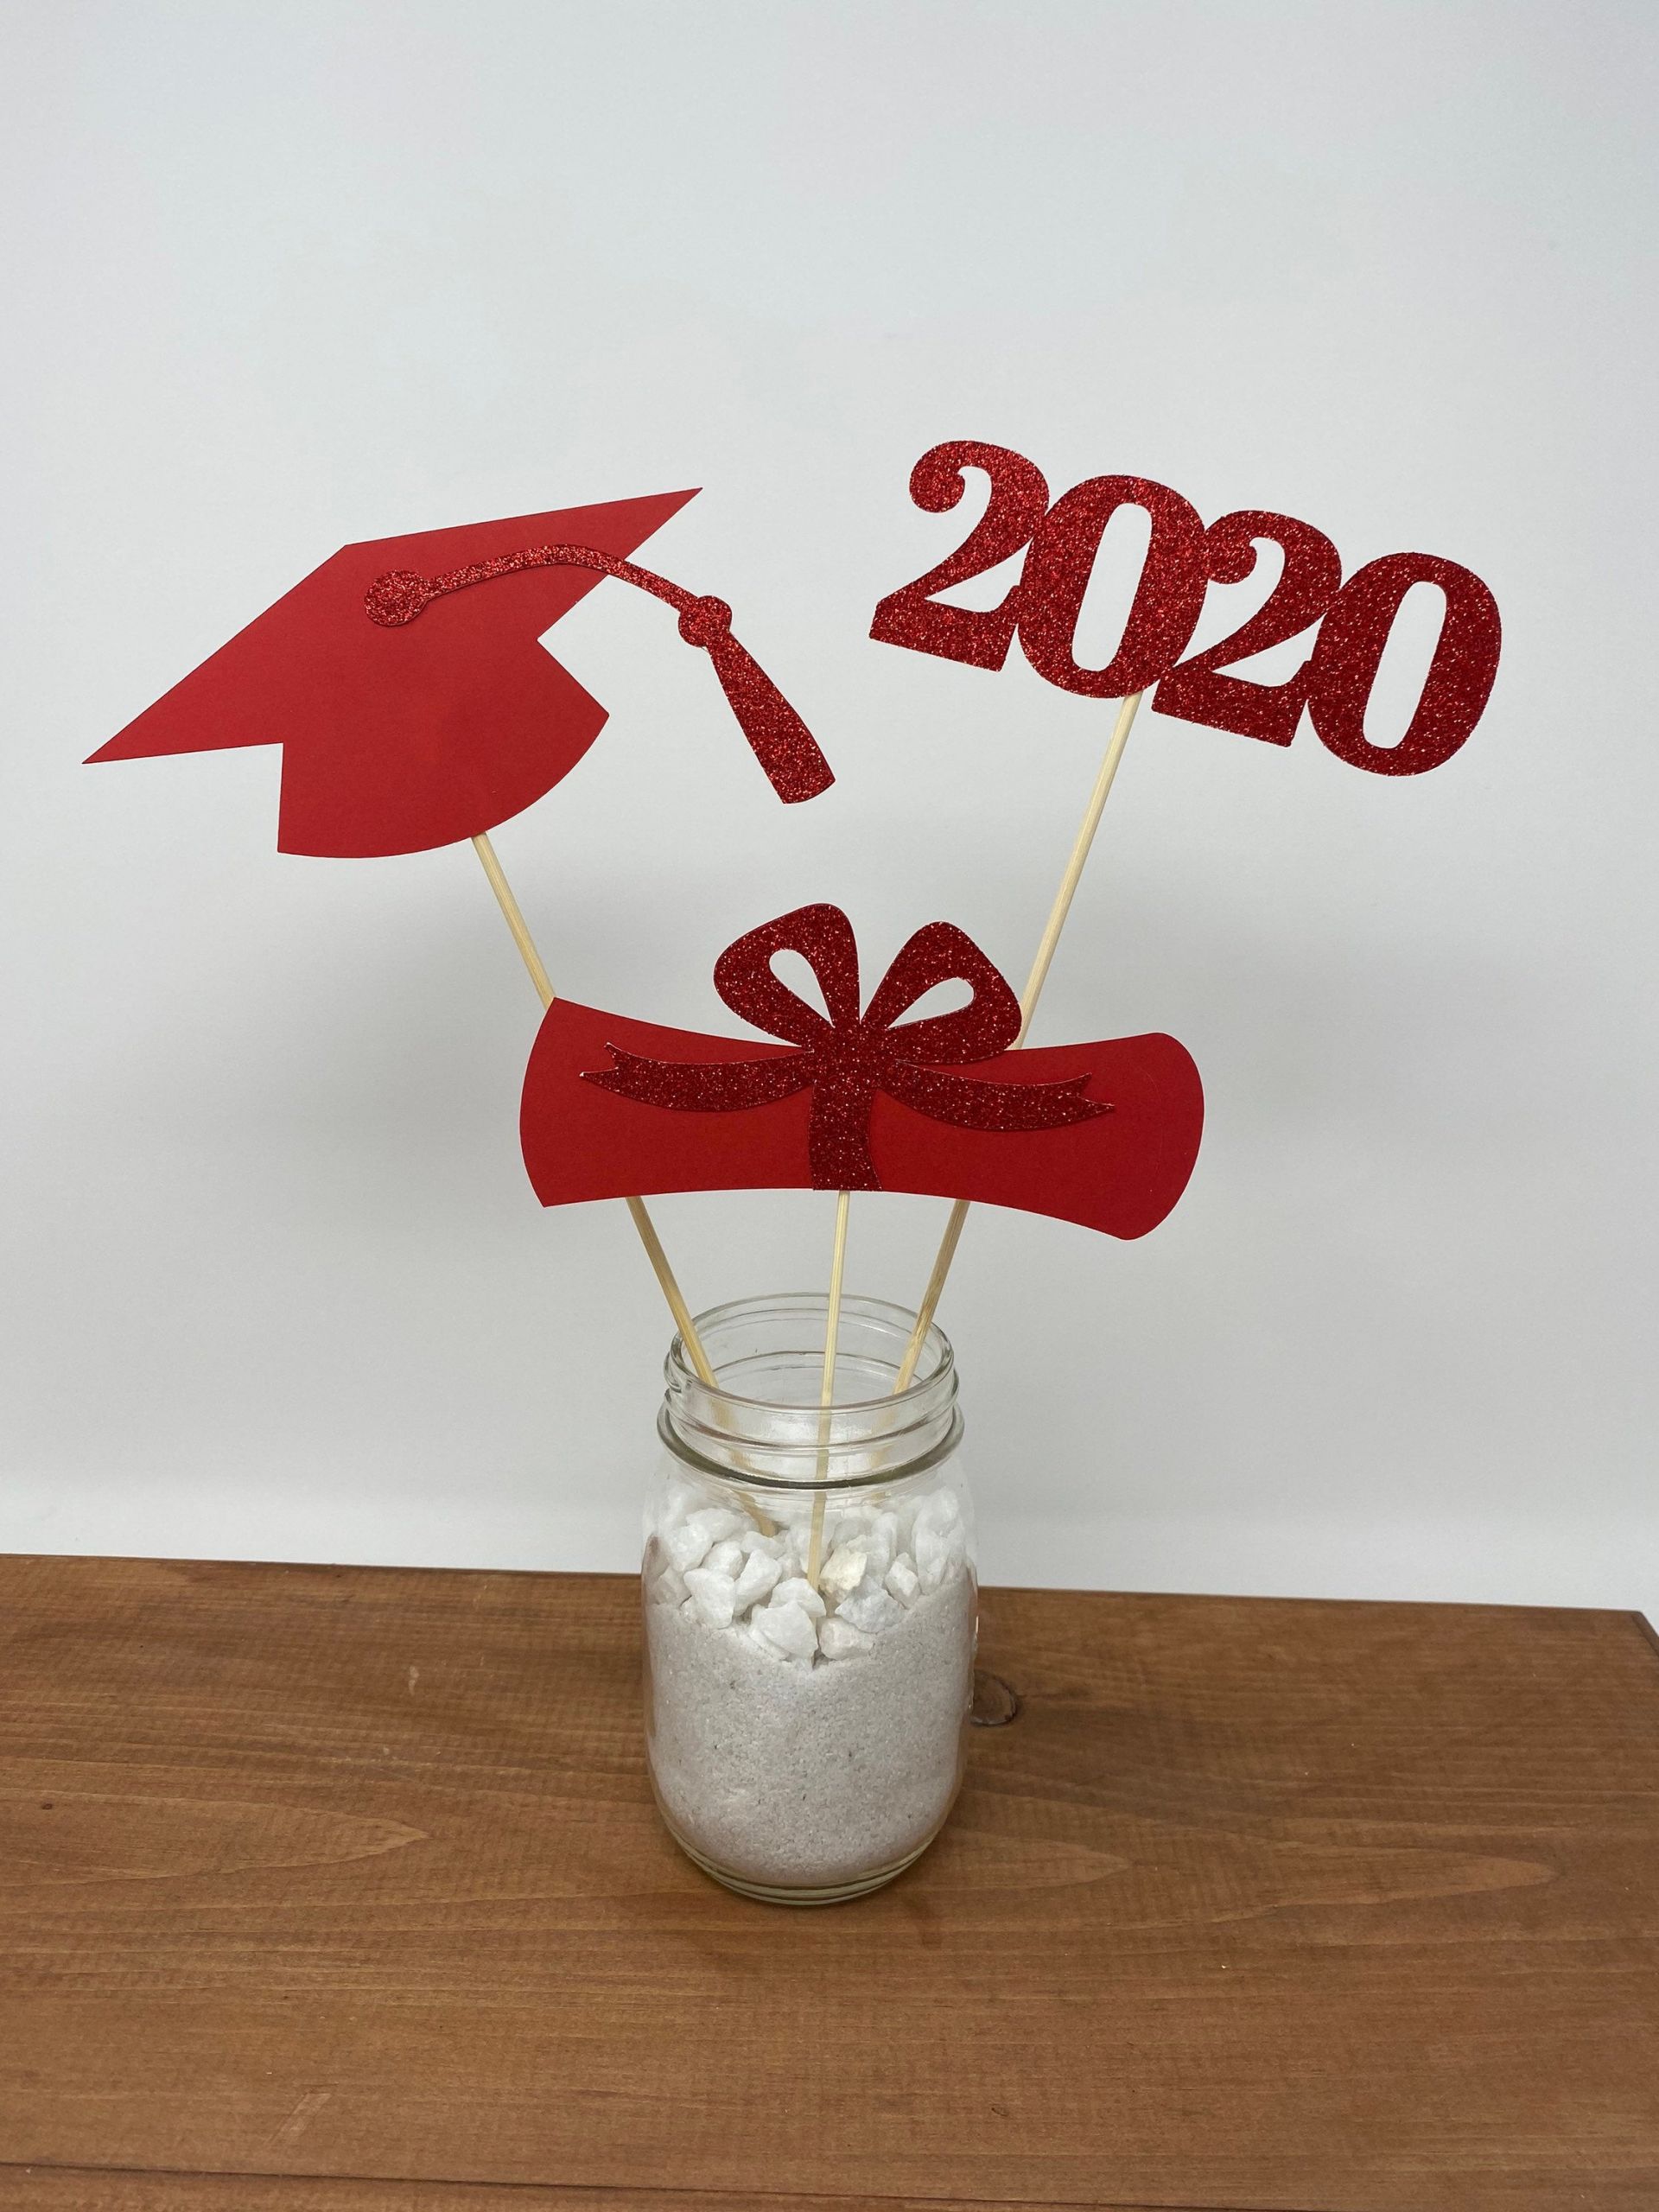 2020 Graduation Party Ideas
 Graduation party decorations 2020 Graduation Centerpiece